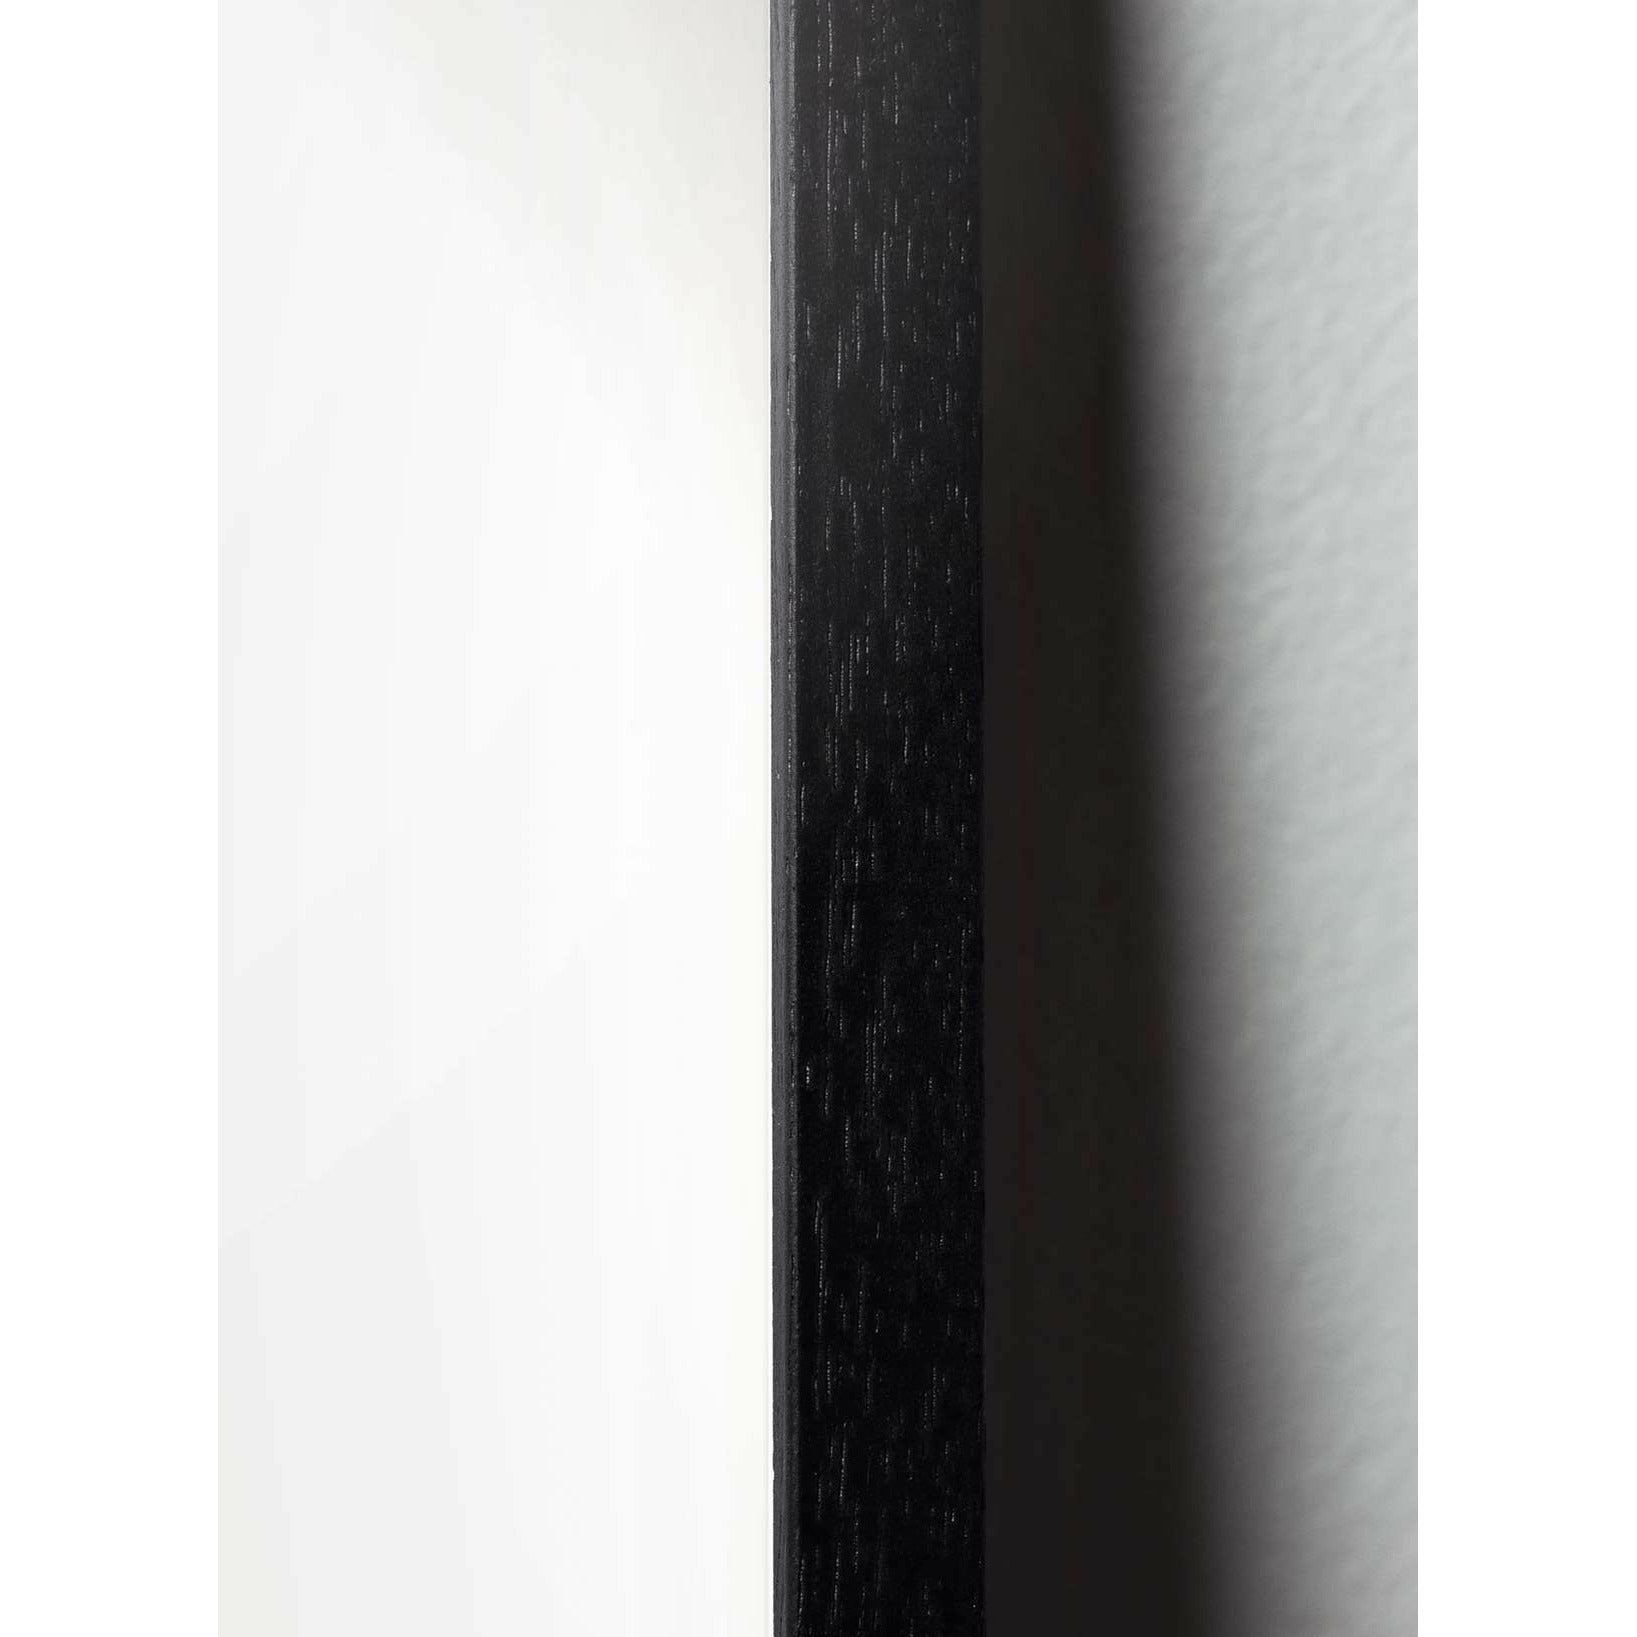 Pomysły Plakat Ant Ant, rama w czarnym lakierowanym drewnie 30x40 cm, białe tło